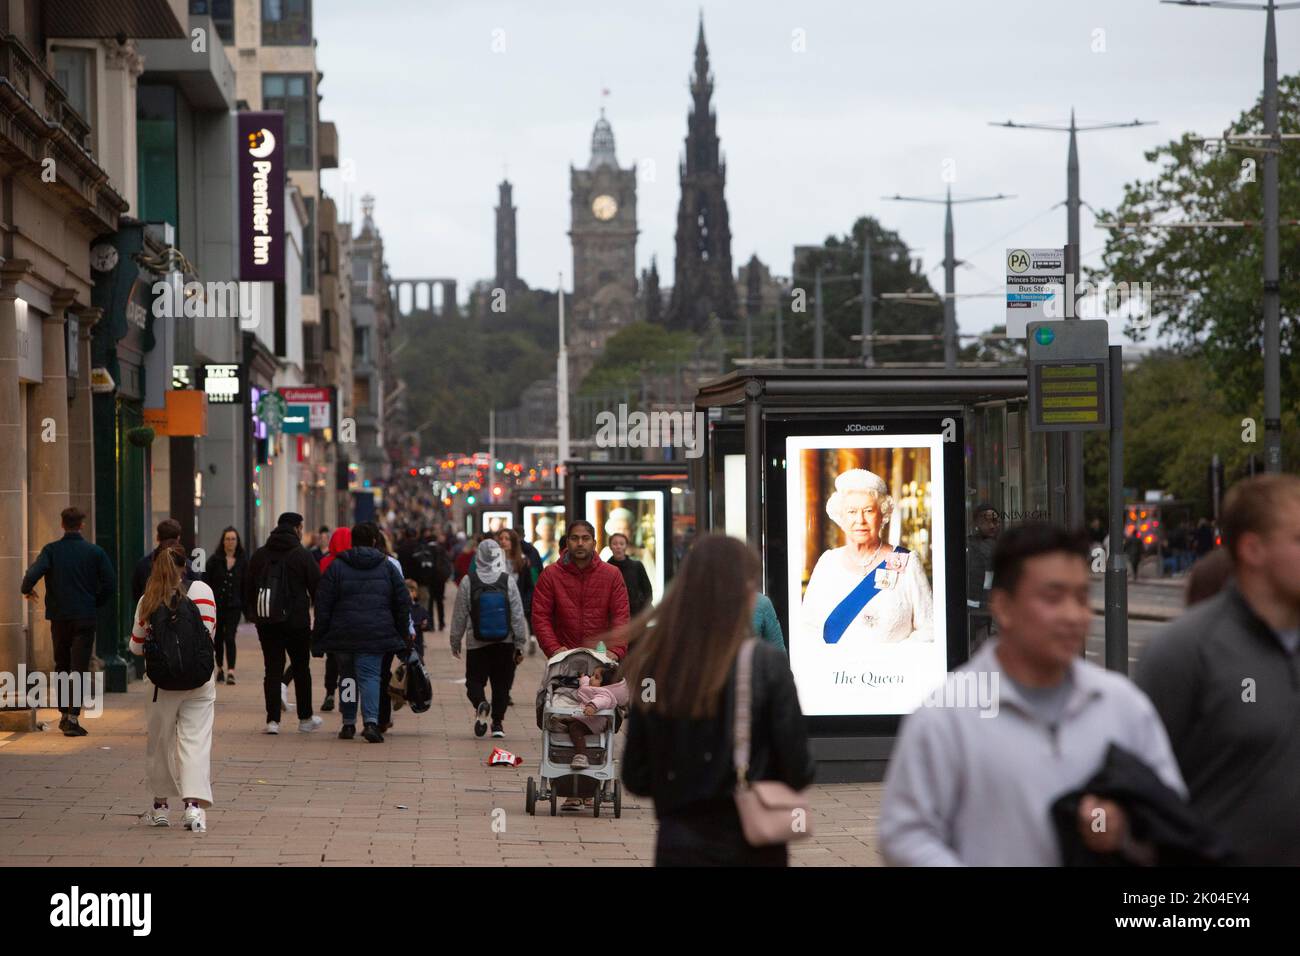 Edinburgh, 9.. September 20202. Poster der Queen Elizabeth II.-Ausstellung in der Princes Street. Edinburgh. Die Königin starb friedlich am 8.. September 2022 in Balmoral. Schottland Bild: Pako Mera/Alamy Live News Stockfoto